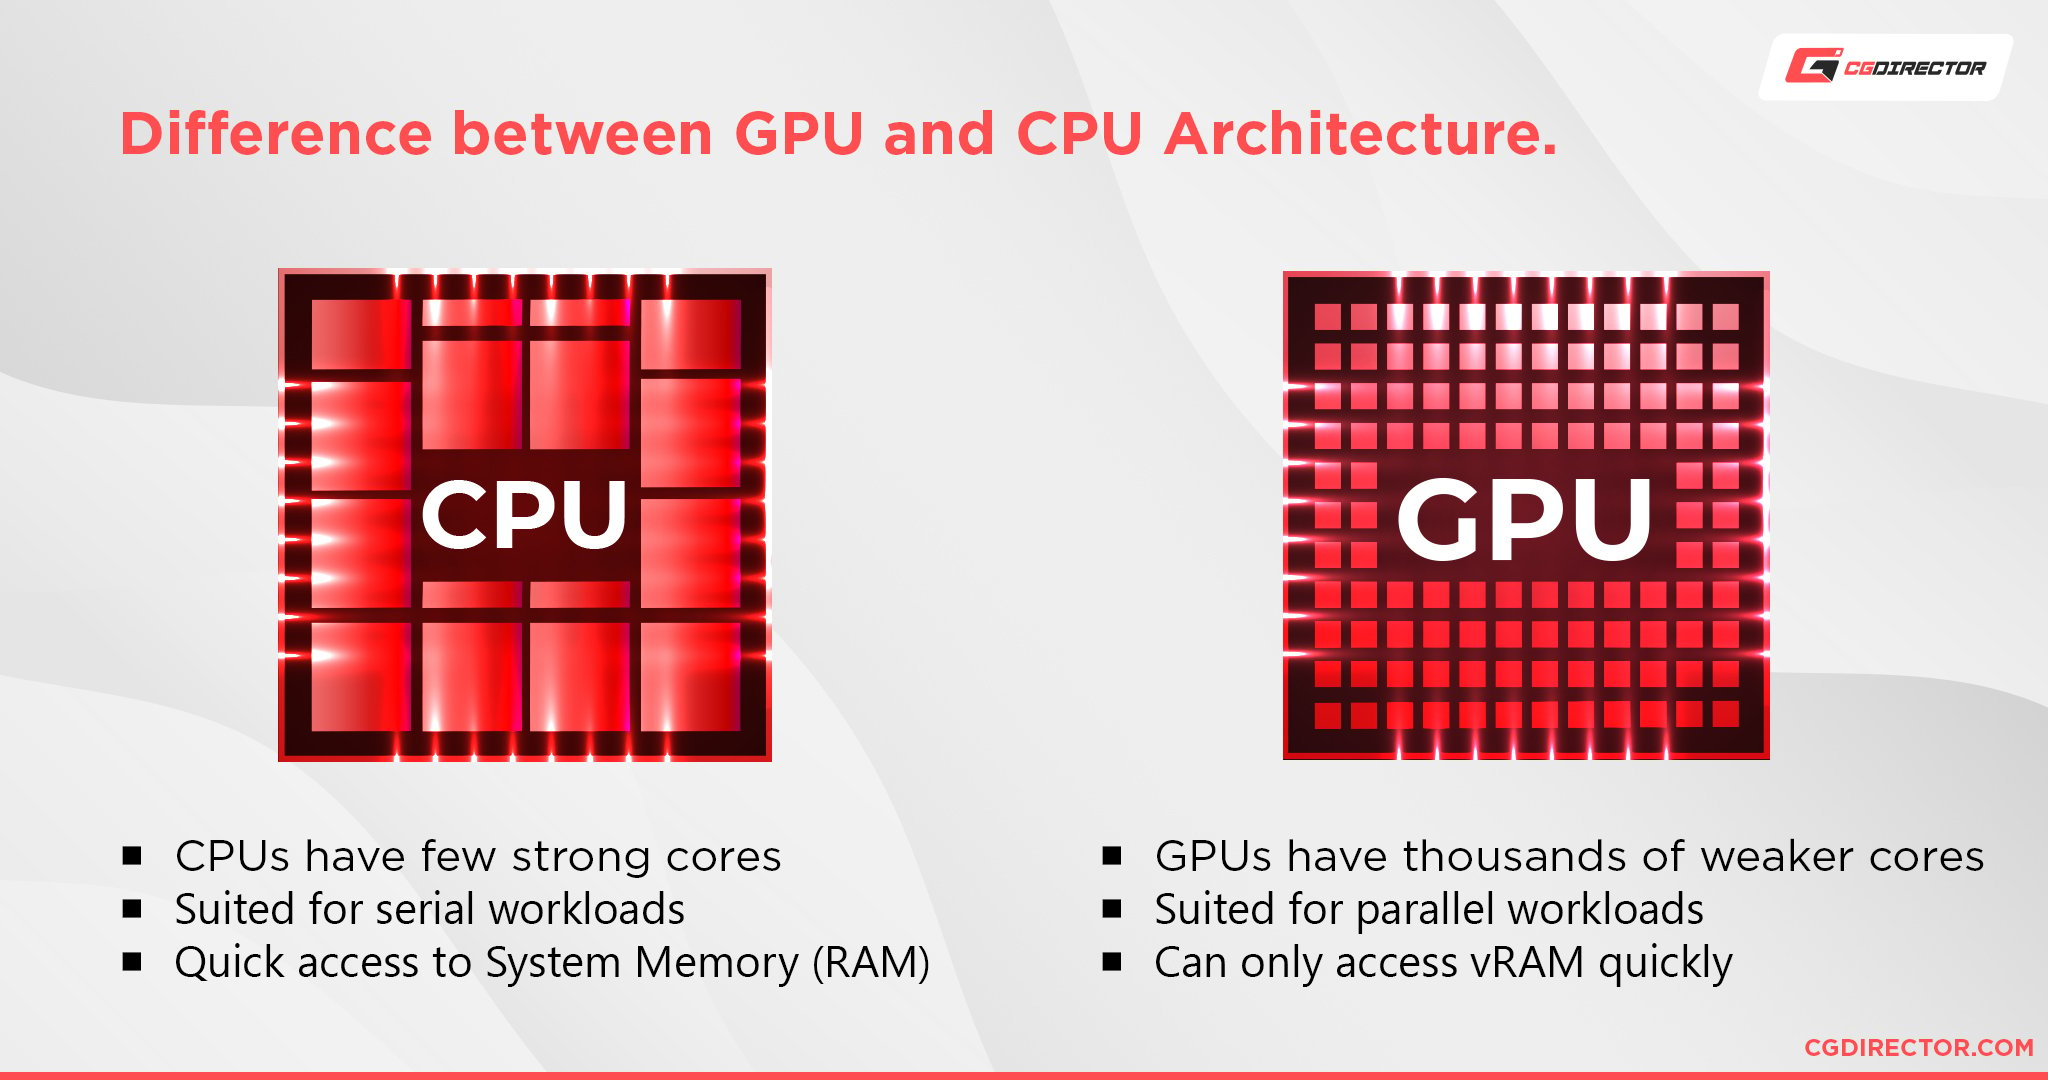 CPU vs GPU rendering